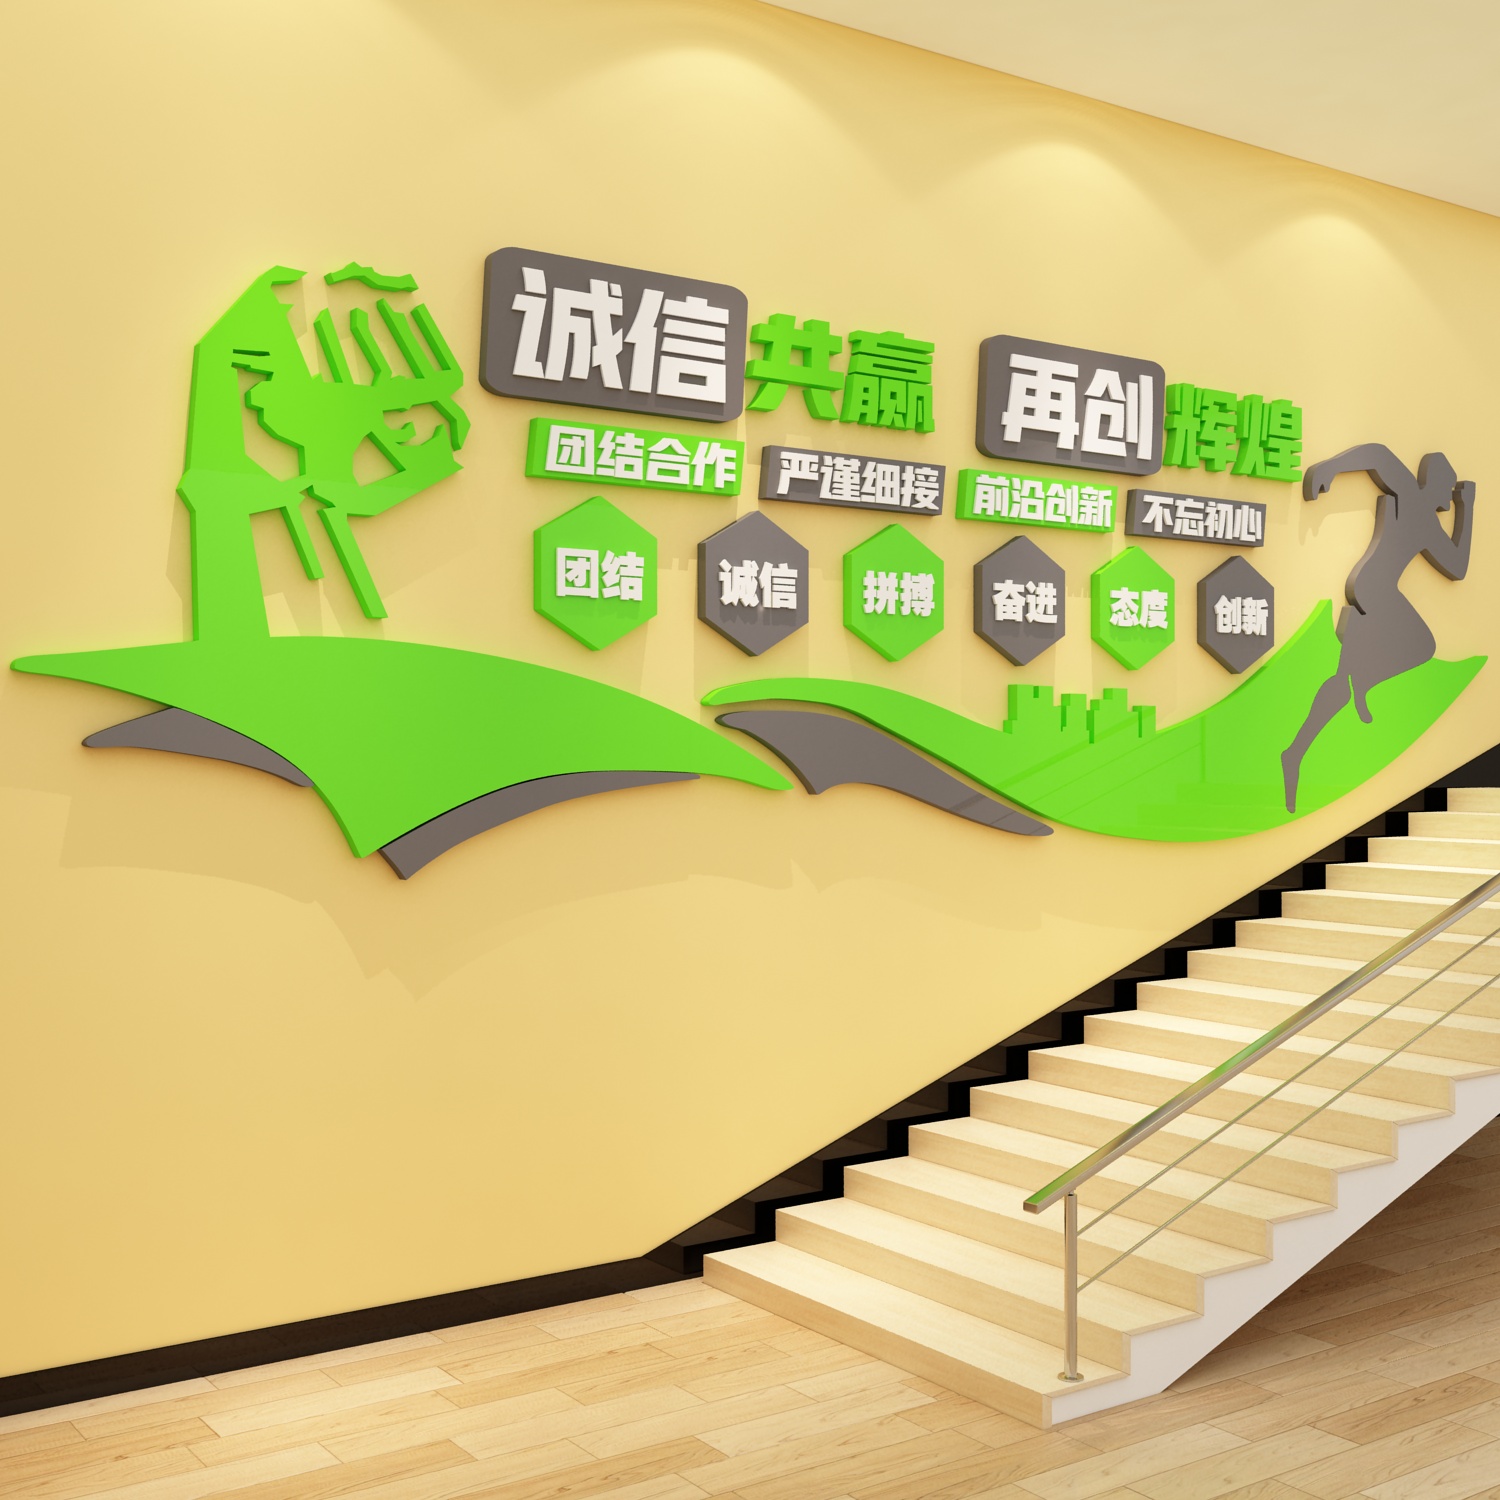 办公室墙面装饰企业文化公司背景氛围布置楼梯台阶贴励志标语挂画